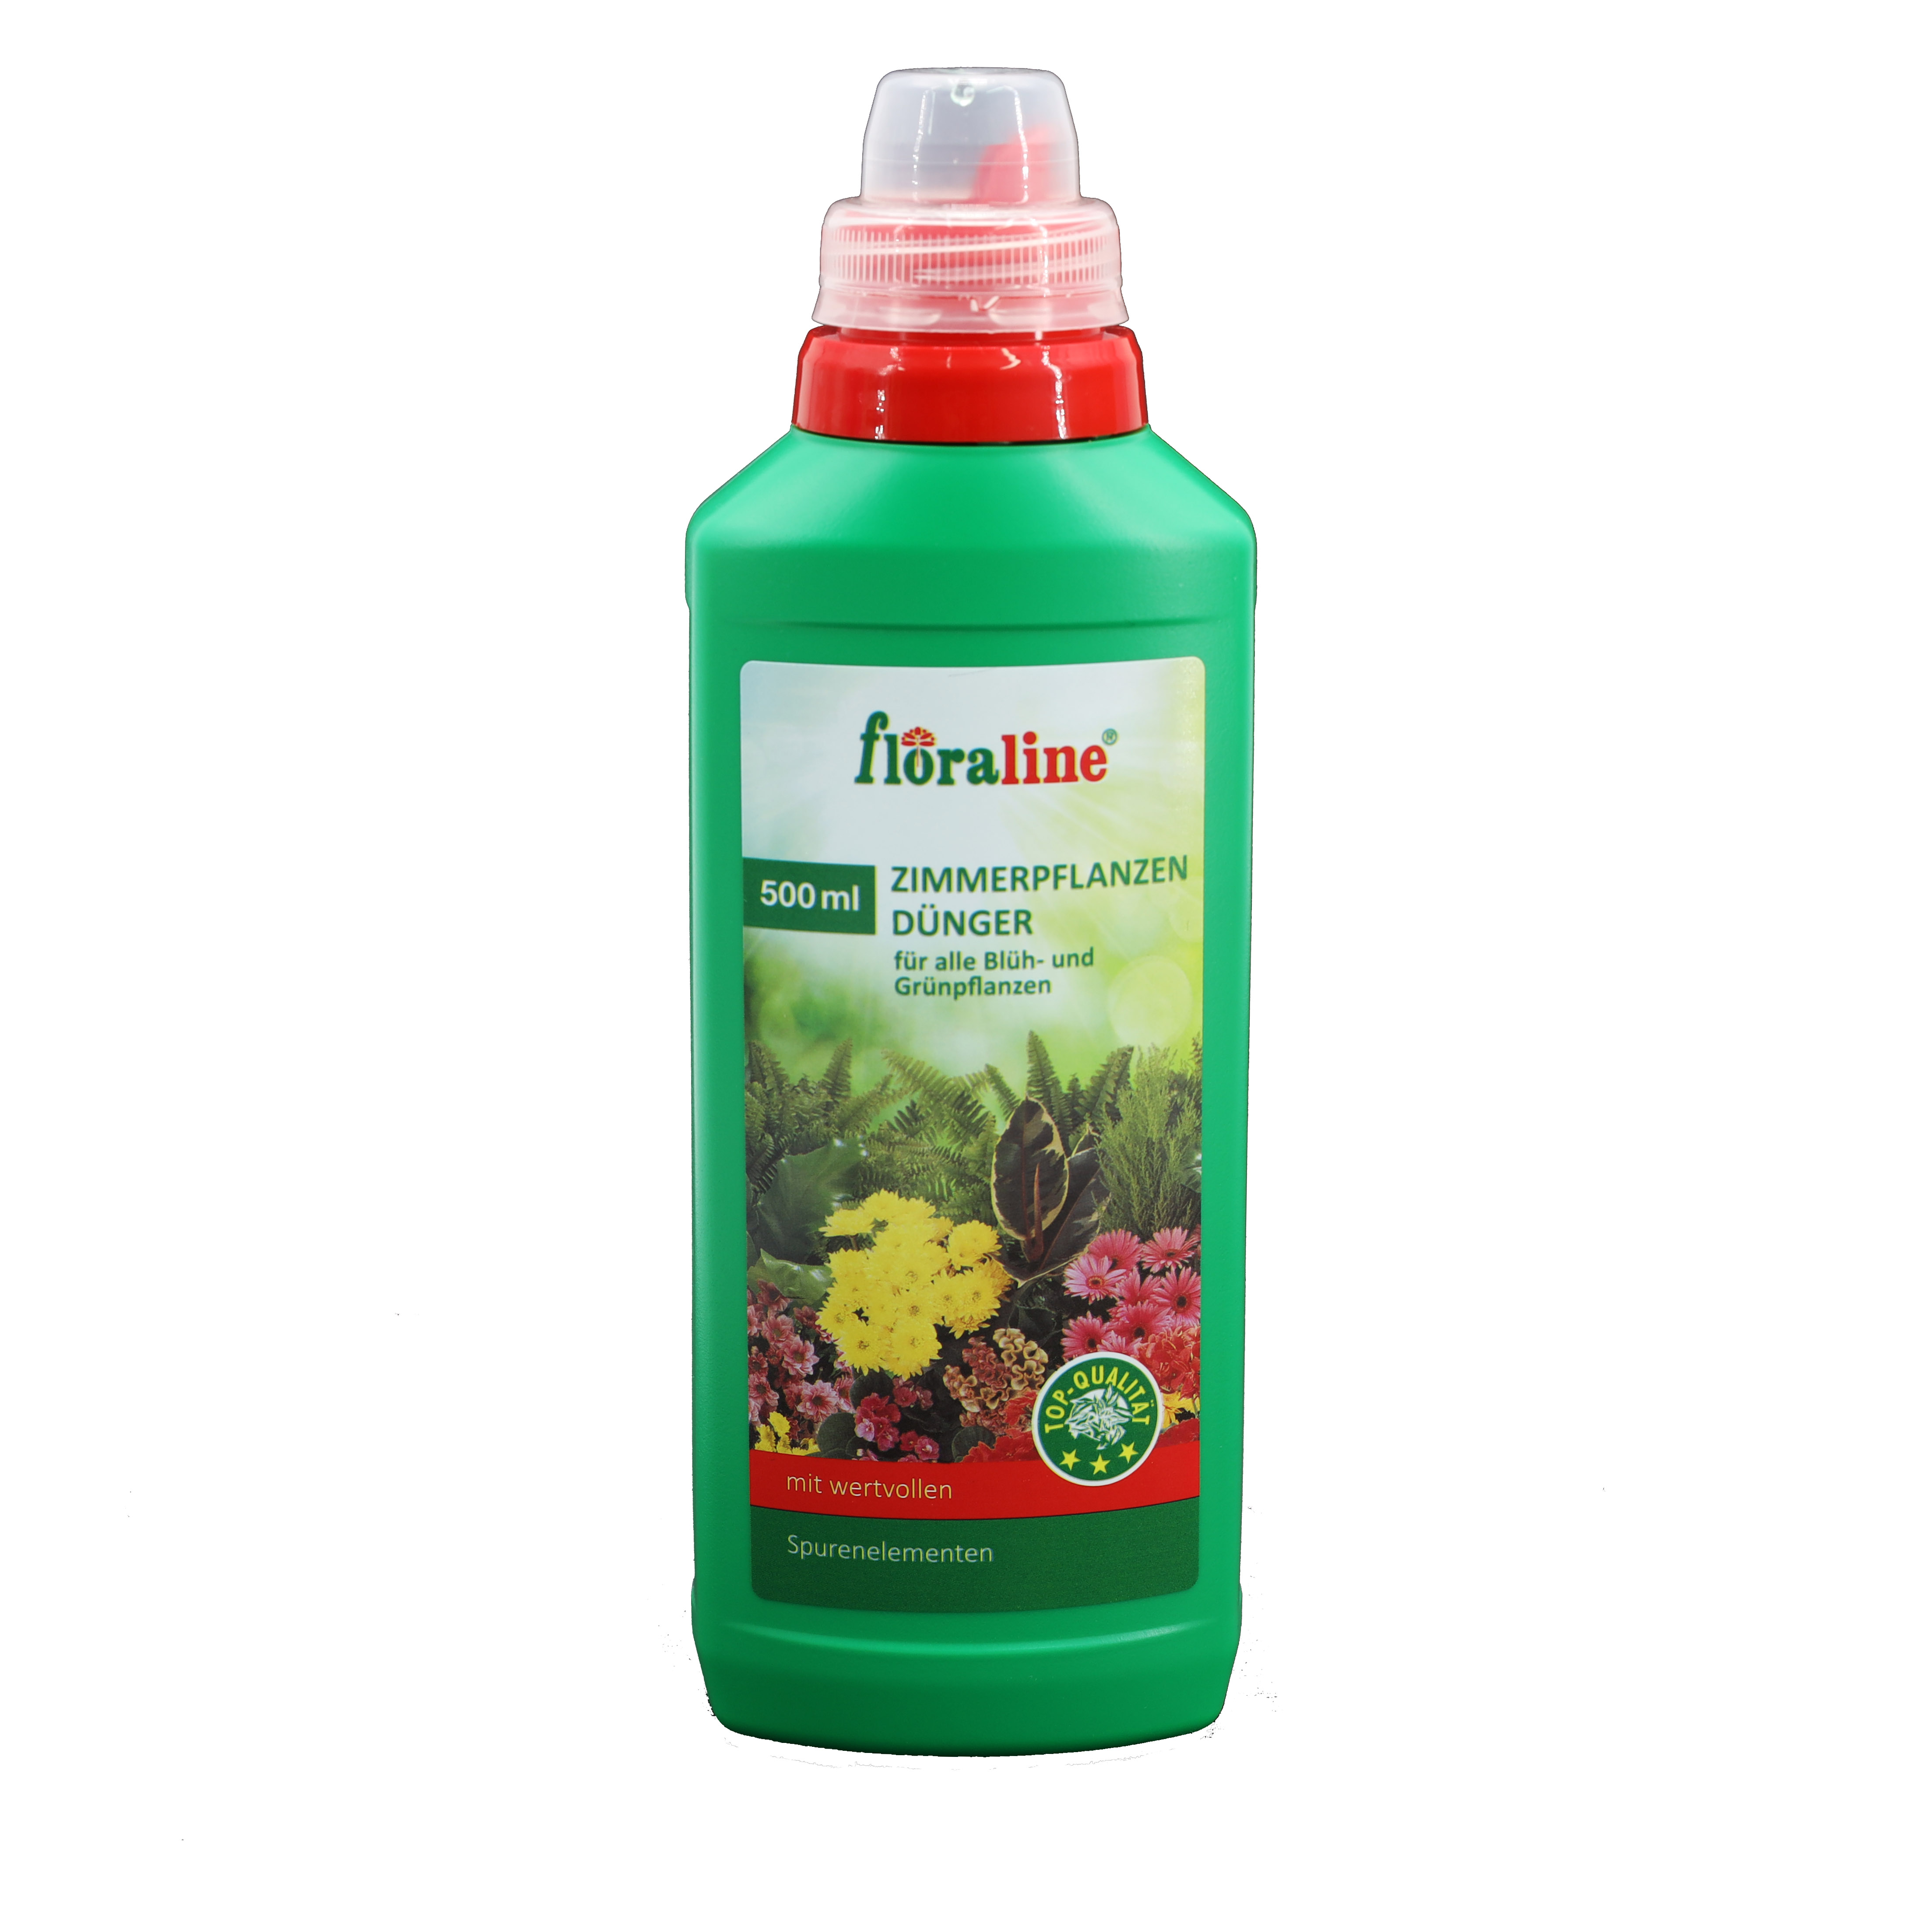 floraline Zimmerpflanzendünger -flüssig- 500ml